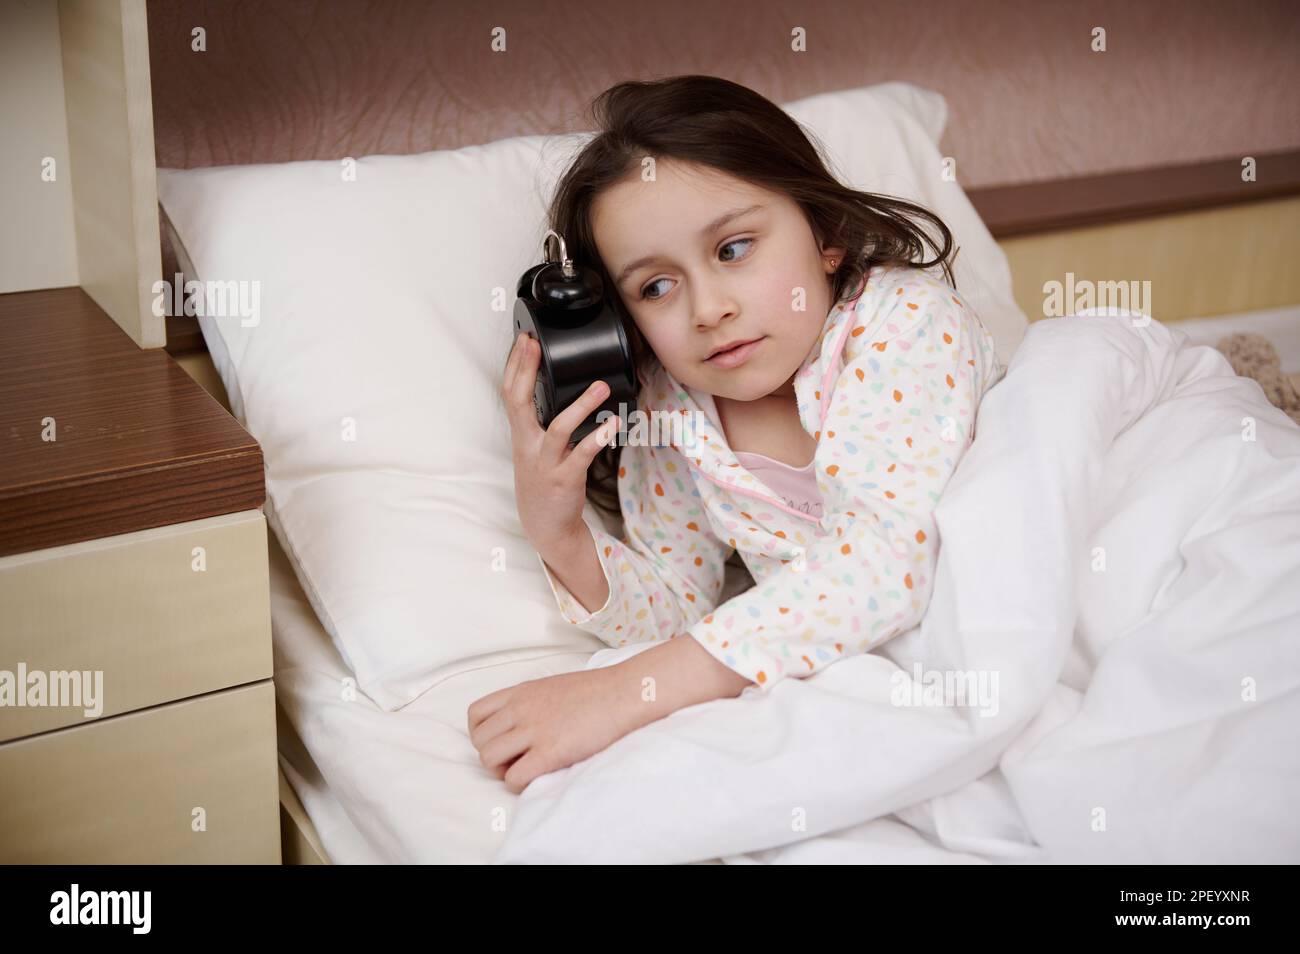 Adorabile bambina che tiene una sveglia vicino al suo viso, vestita di pigiami glamour, preparandosi per il letto Foto Stock